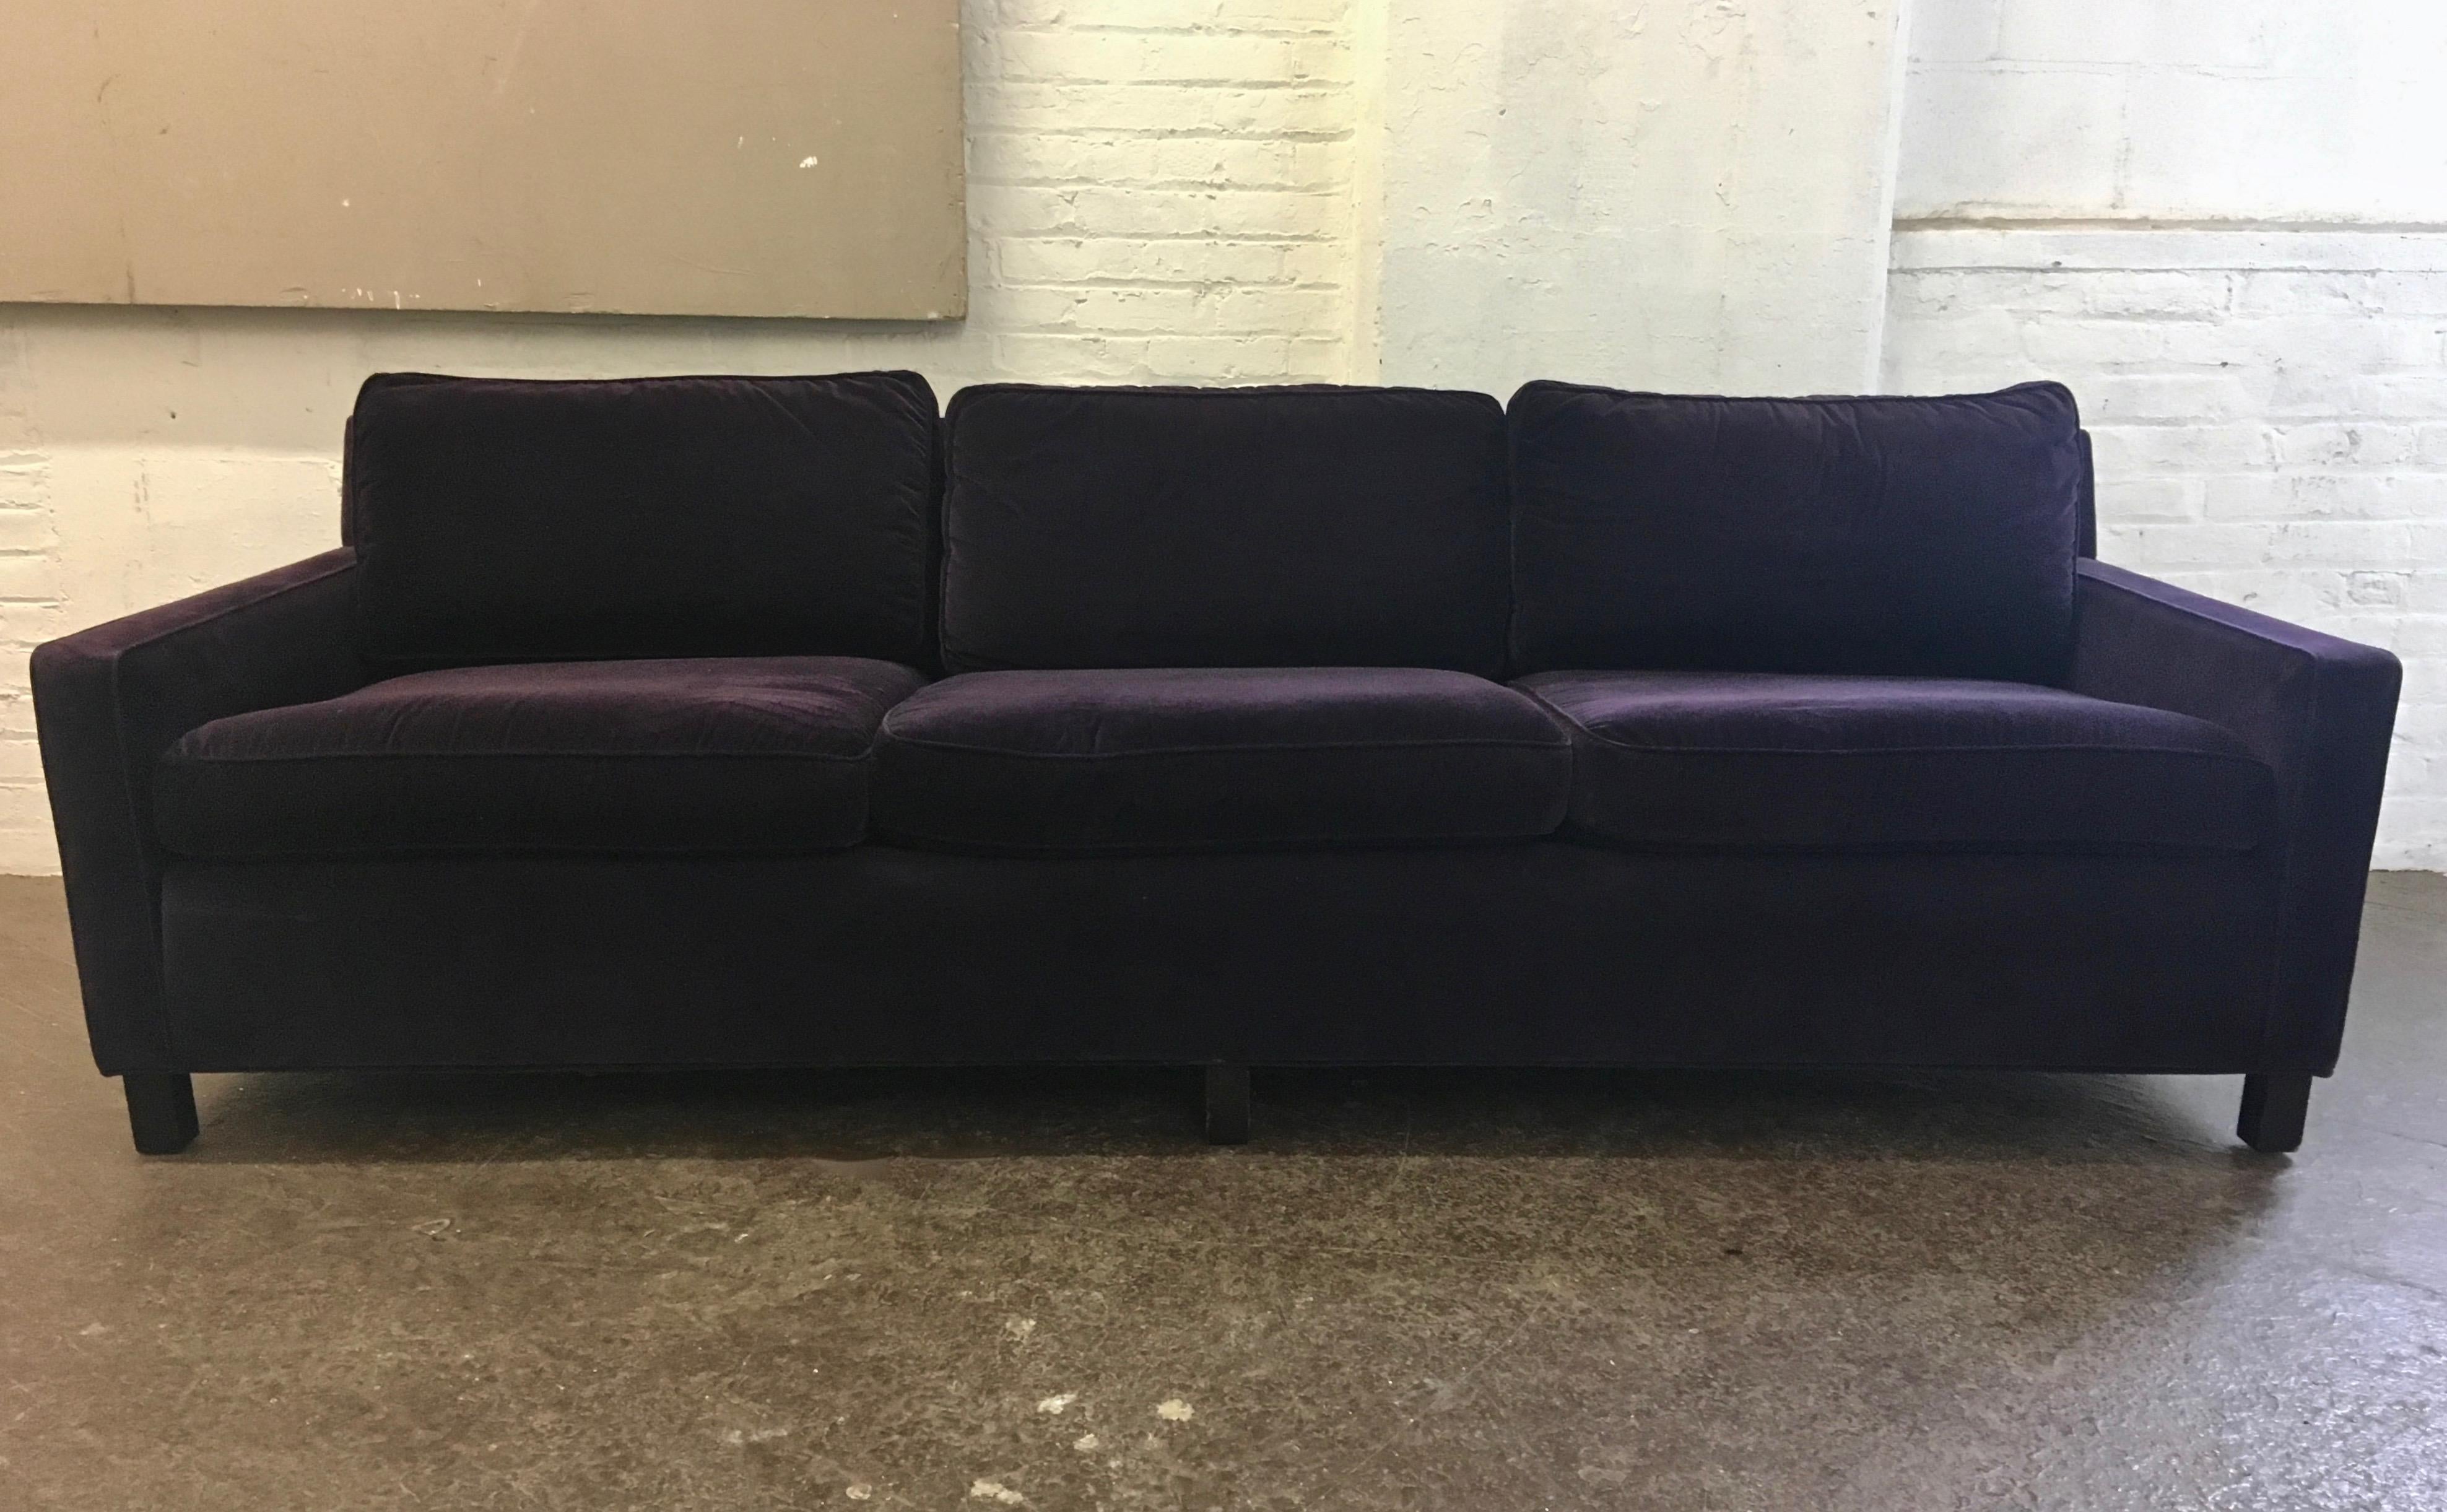 96 Zoll langes Sofa, entworfen von Harvey Probber, gestützt auf sechs massiven, gebeizten Holzbeinen und gepolstert mit tiefem lila/pflaumenfarbenem Samt. 
Armhöhe: 22 Zoll